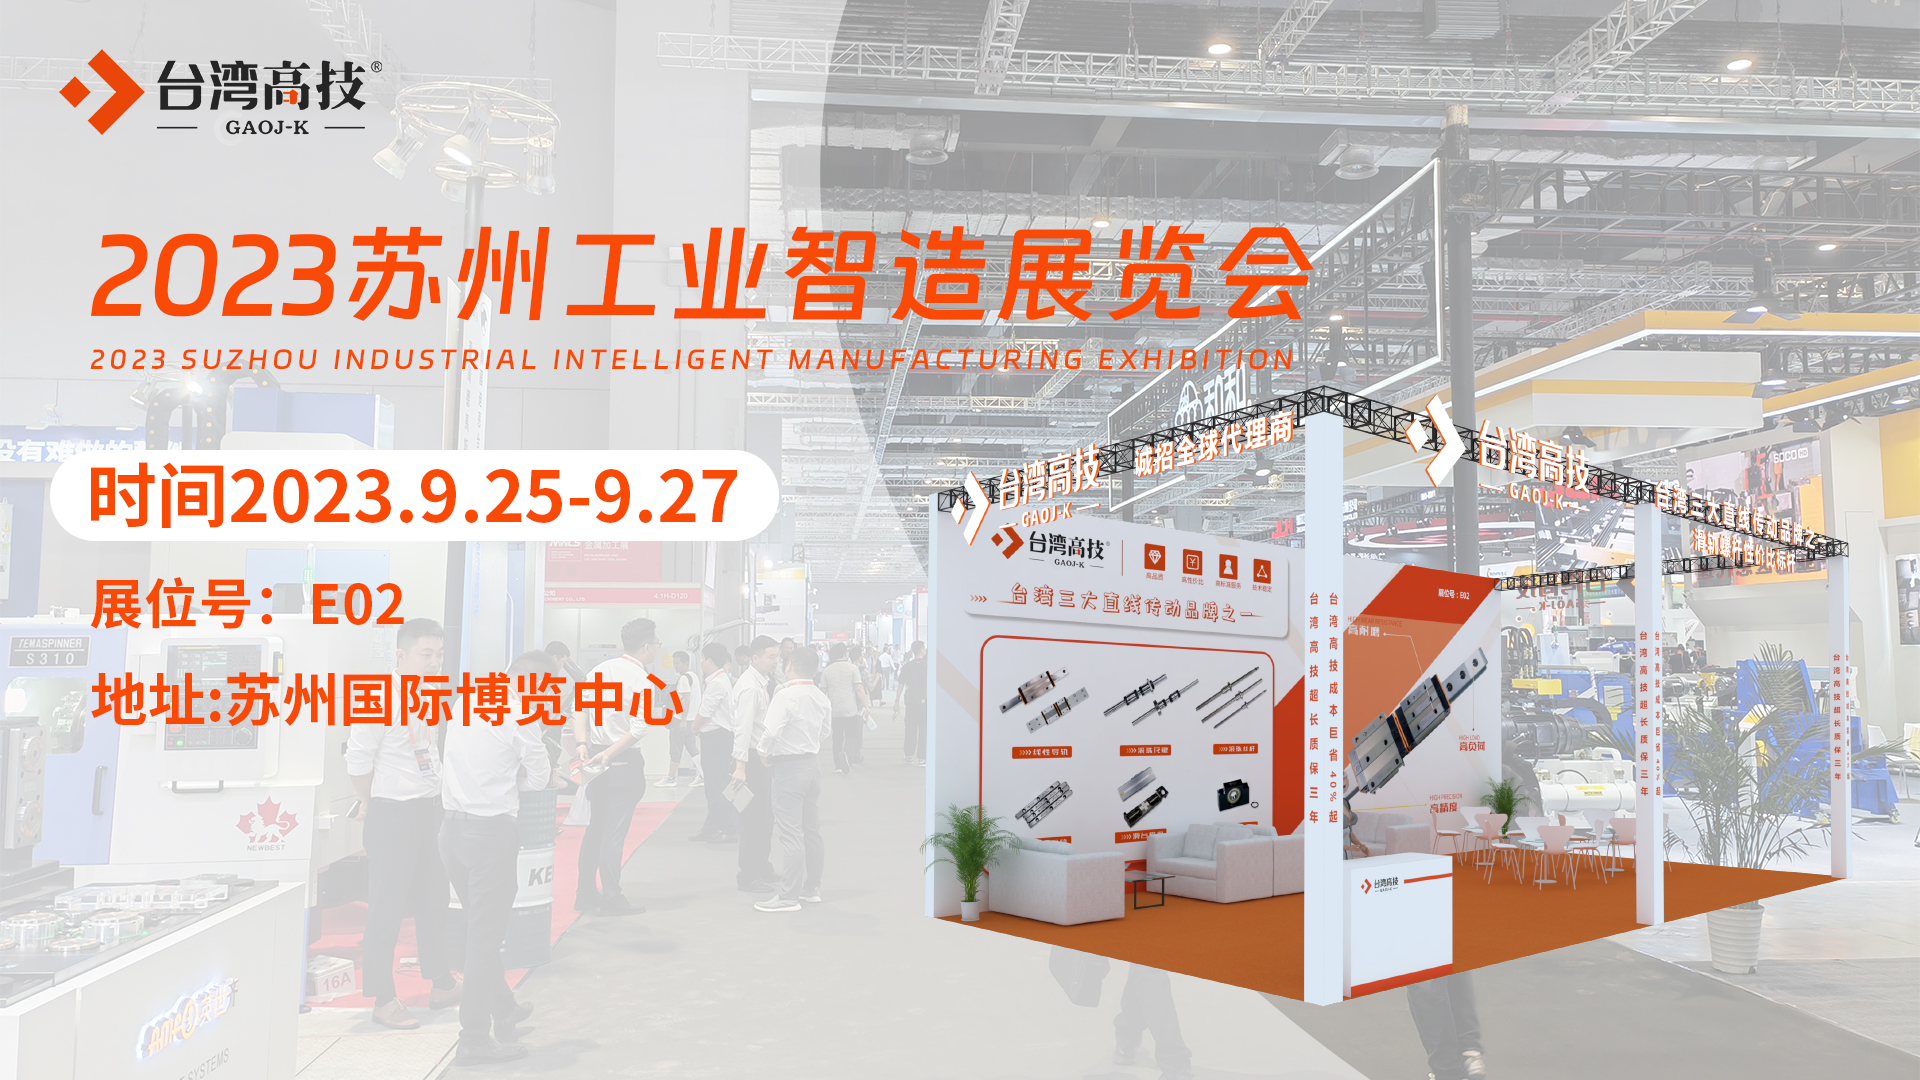 台湾高技2023上海工博会完美落幕，苏州工业制造展再续辉煌！